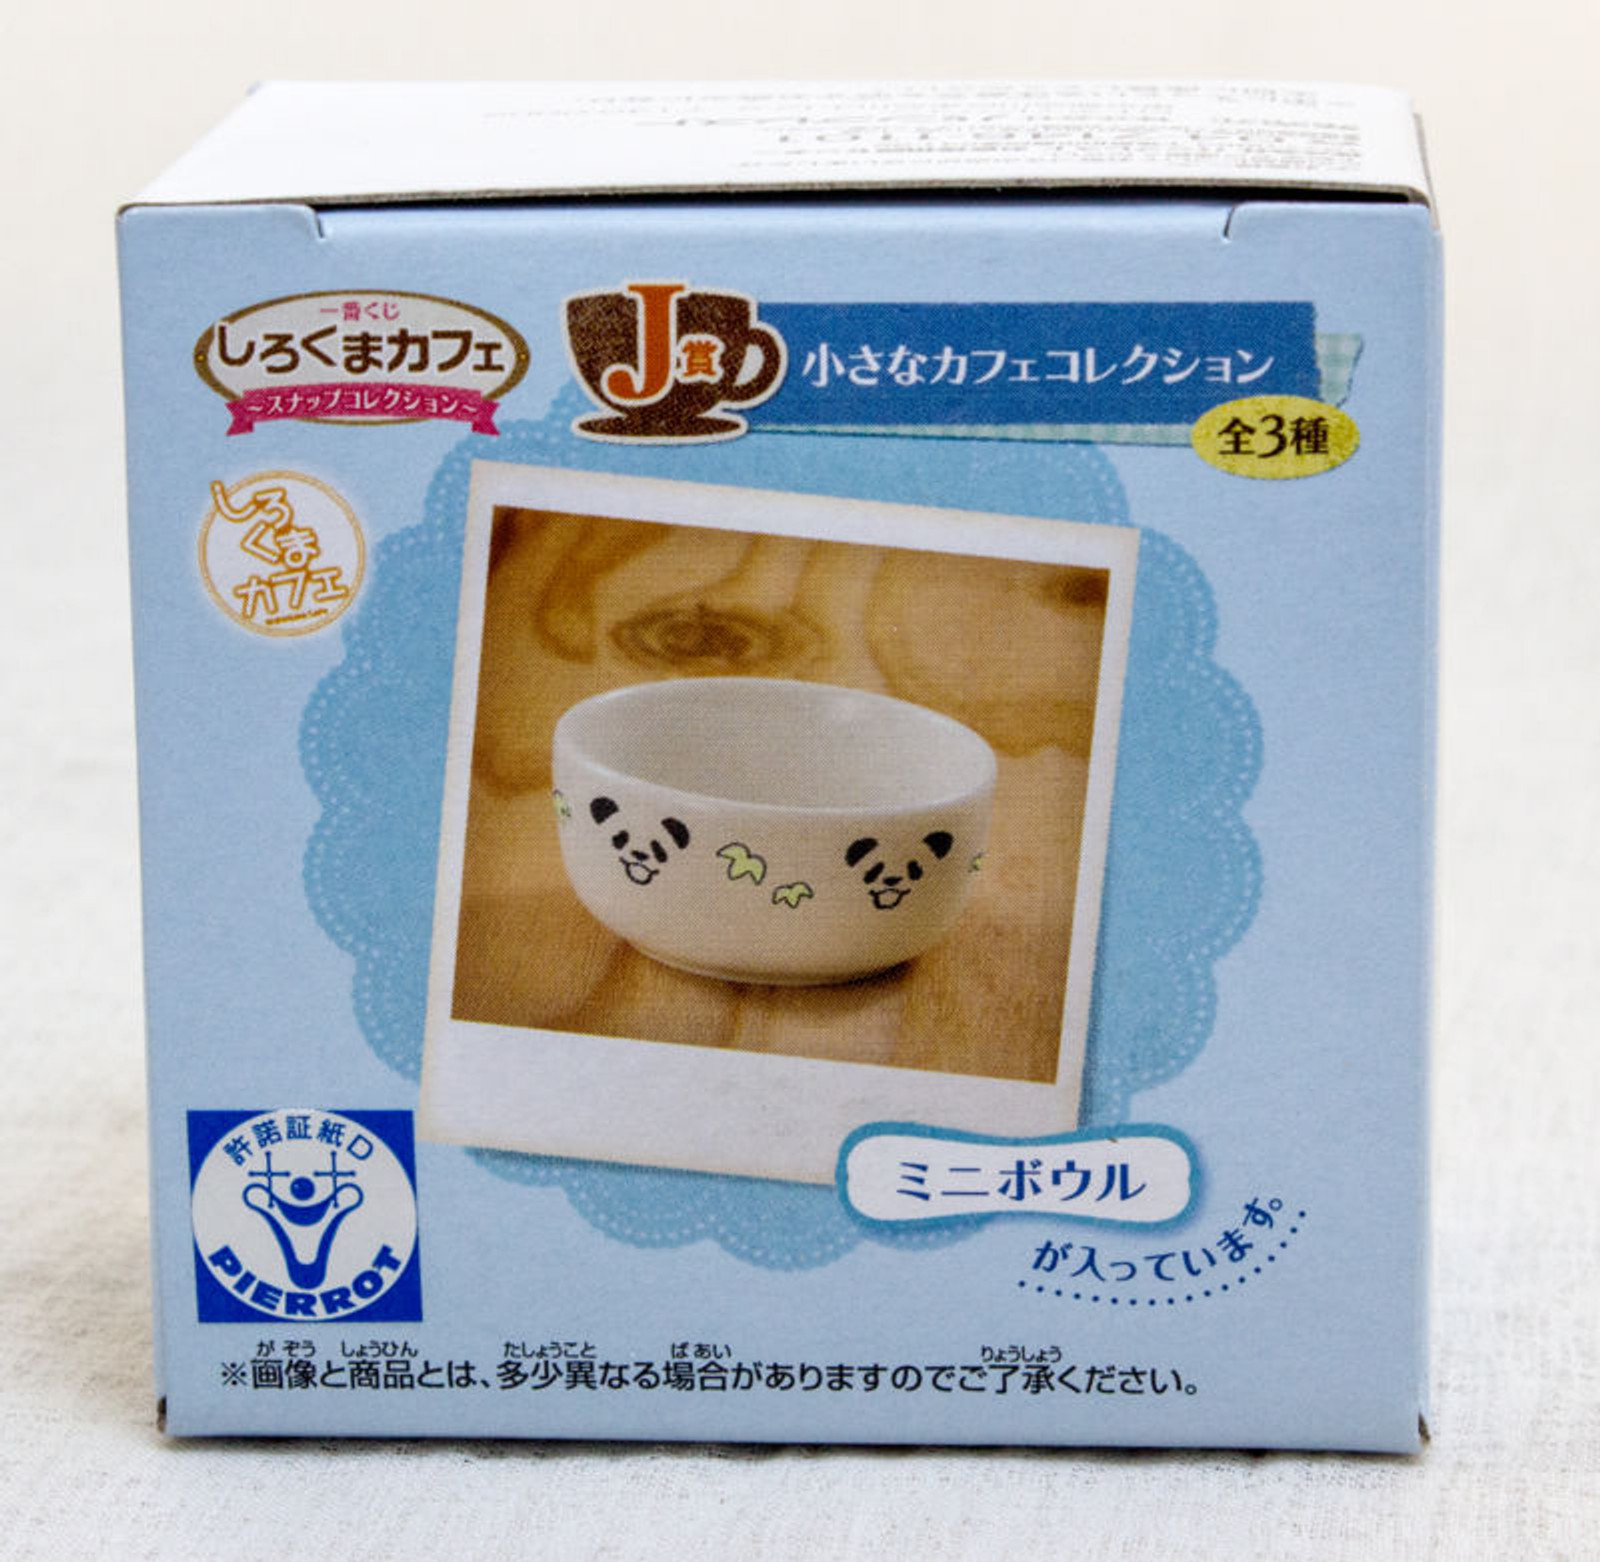 Shirokuma Cafe Miniature Cafe Collection Plate & Mug & Bowl Set JAPAN